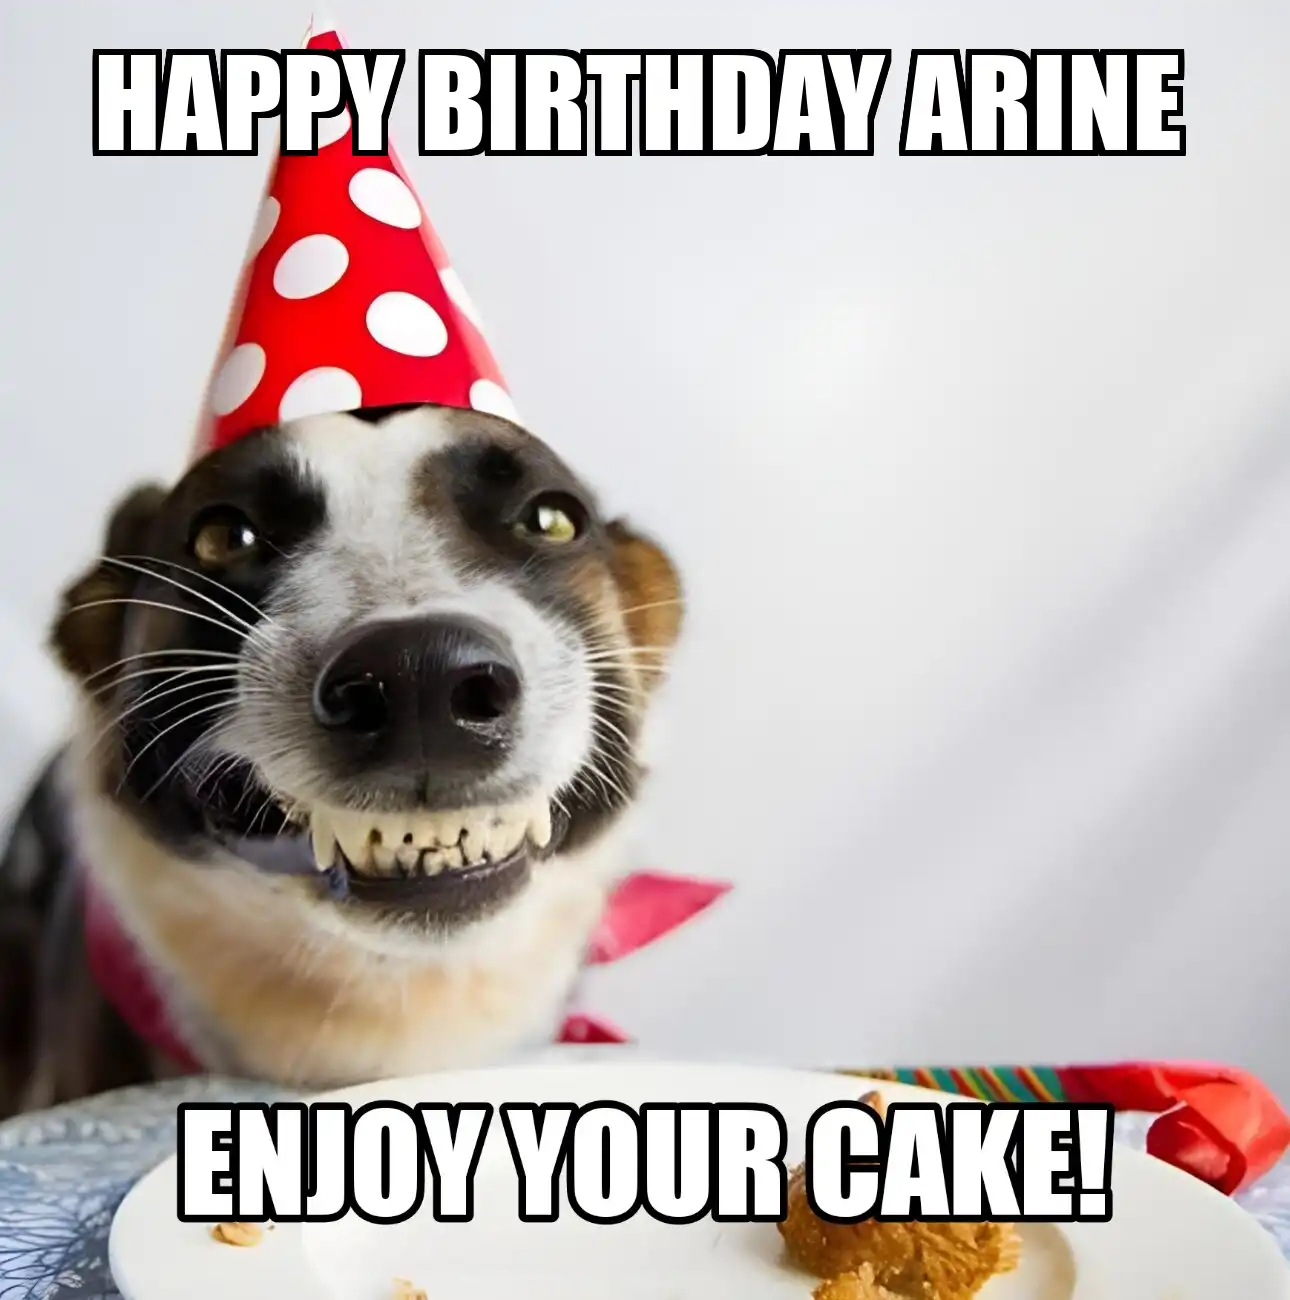 Happy Birthday Arine Enjoy Your Cake Dog Meme